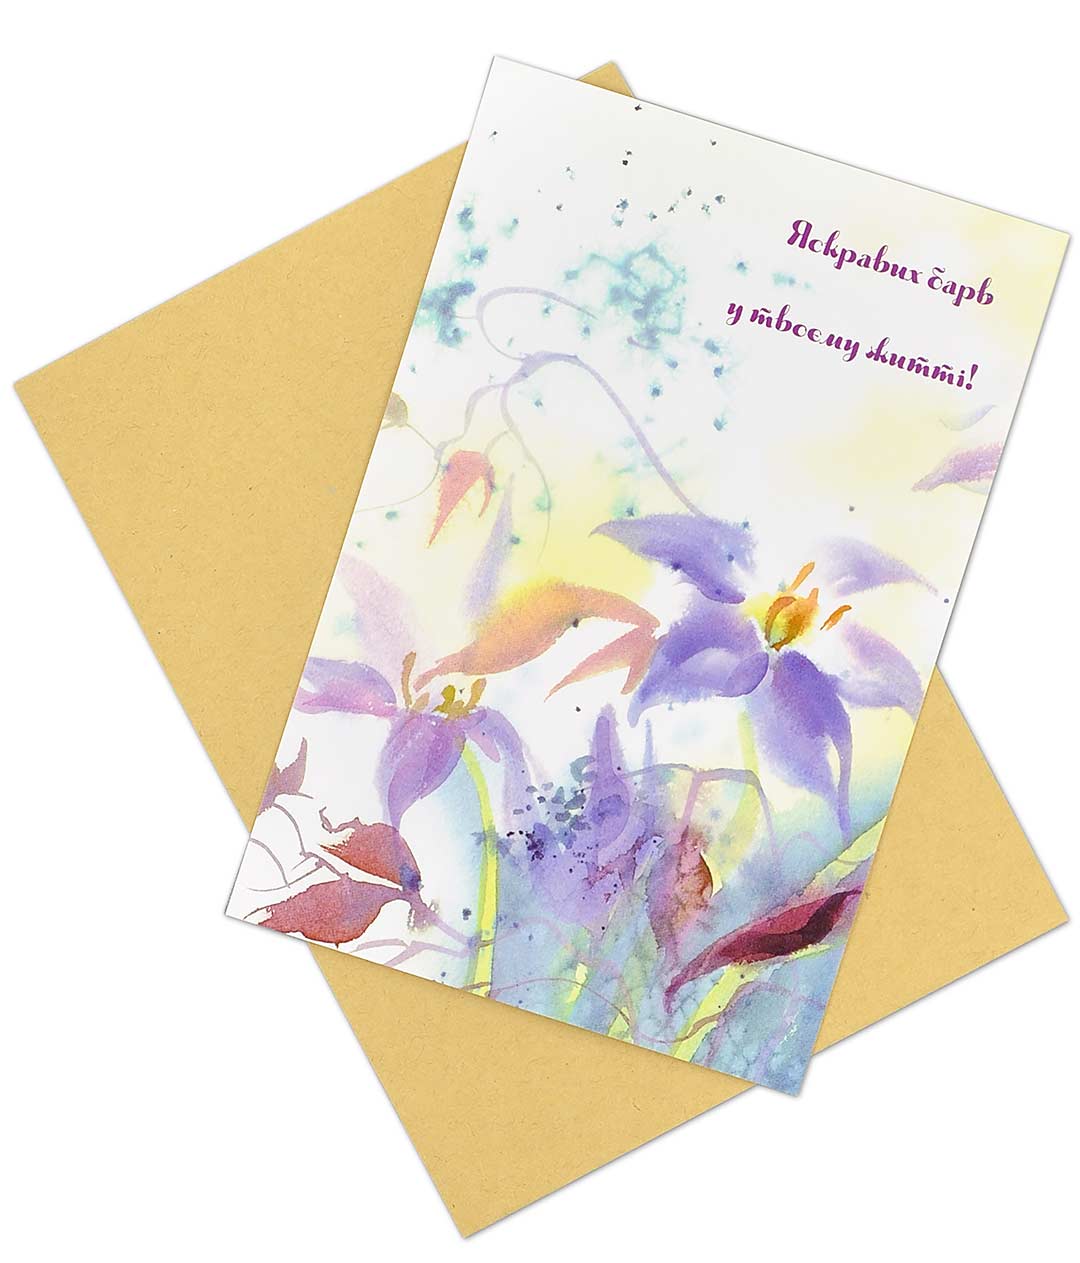 Изображение Поздравительная открытка с конвертом Ярких красок в твоей жизни!